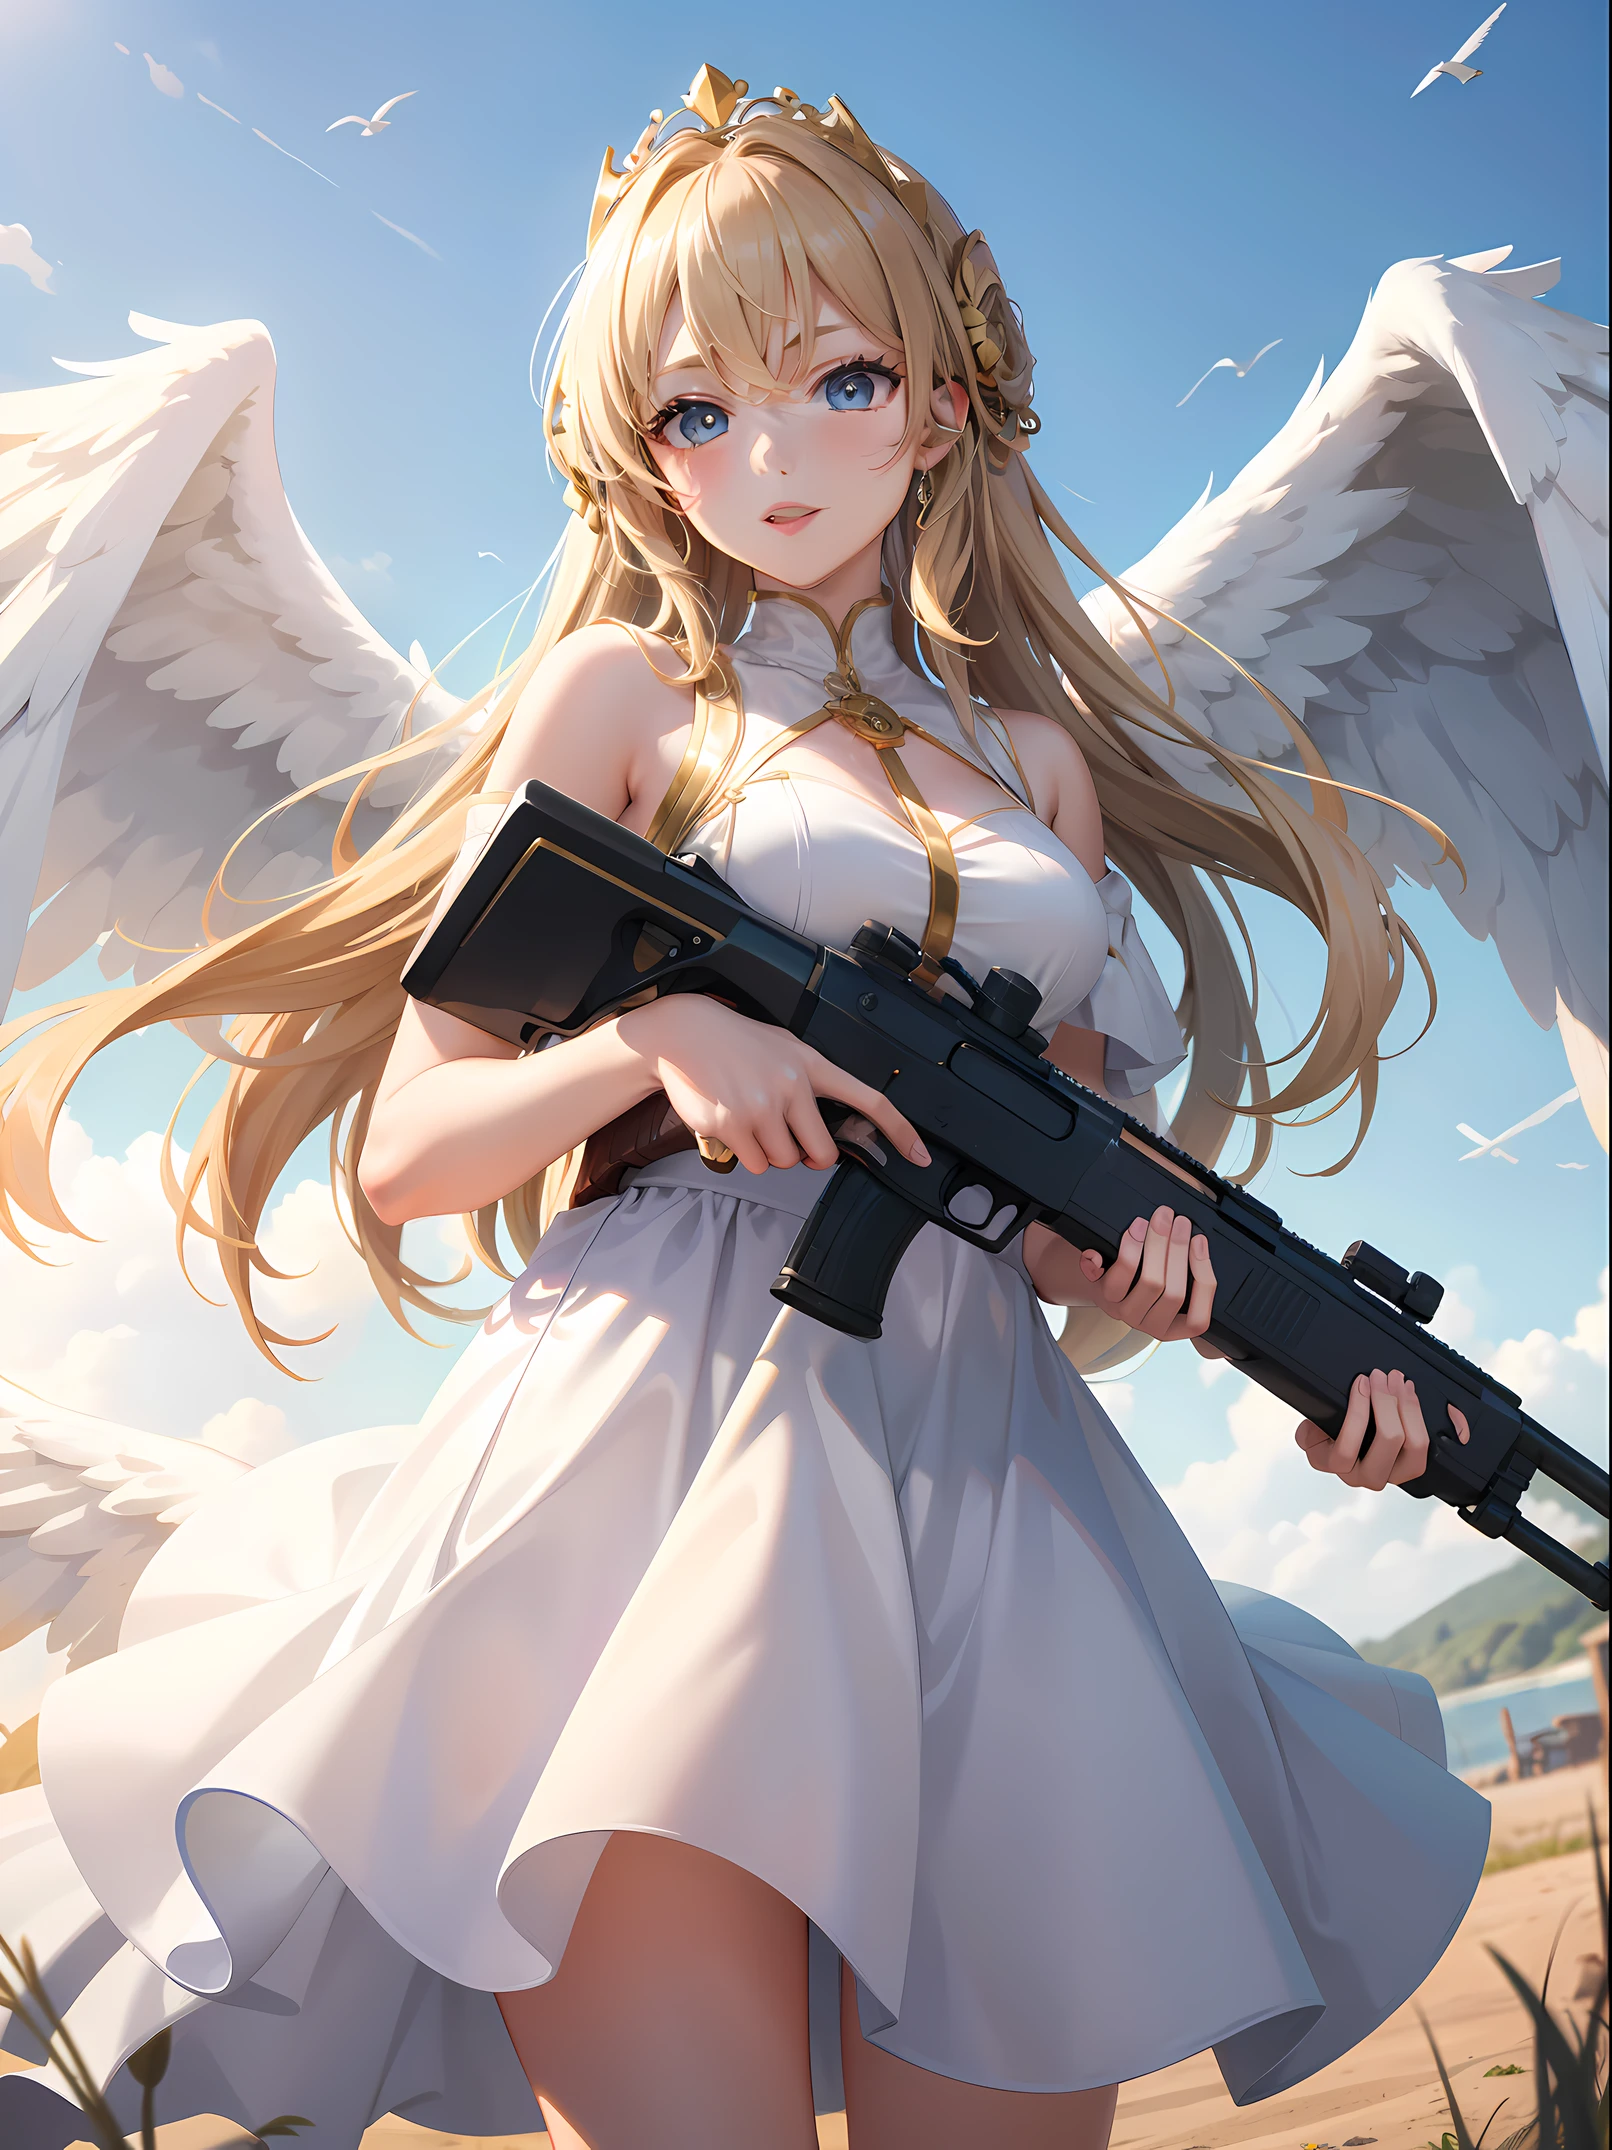 Obra de arte, melhor qualidade, 1 garota, lindo anjo feminino com uma grande espingarda de ação bomba, Céu, asas brancas, coroa de ouro